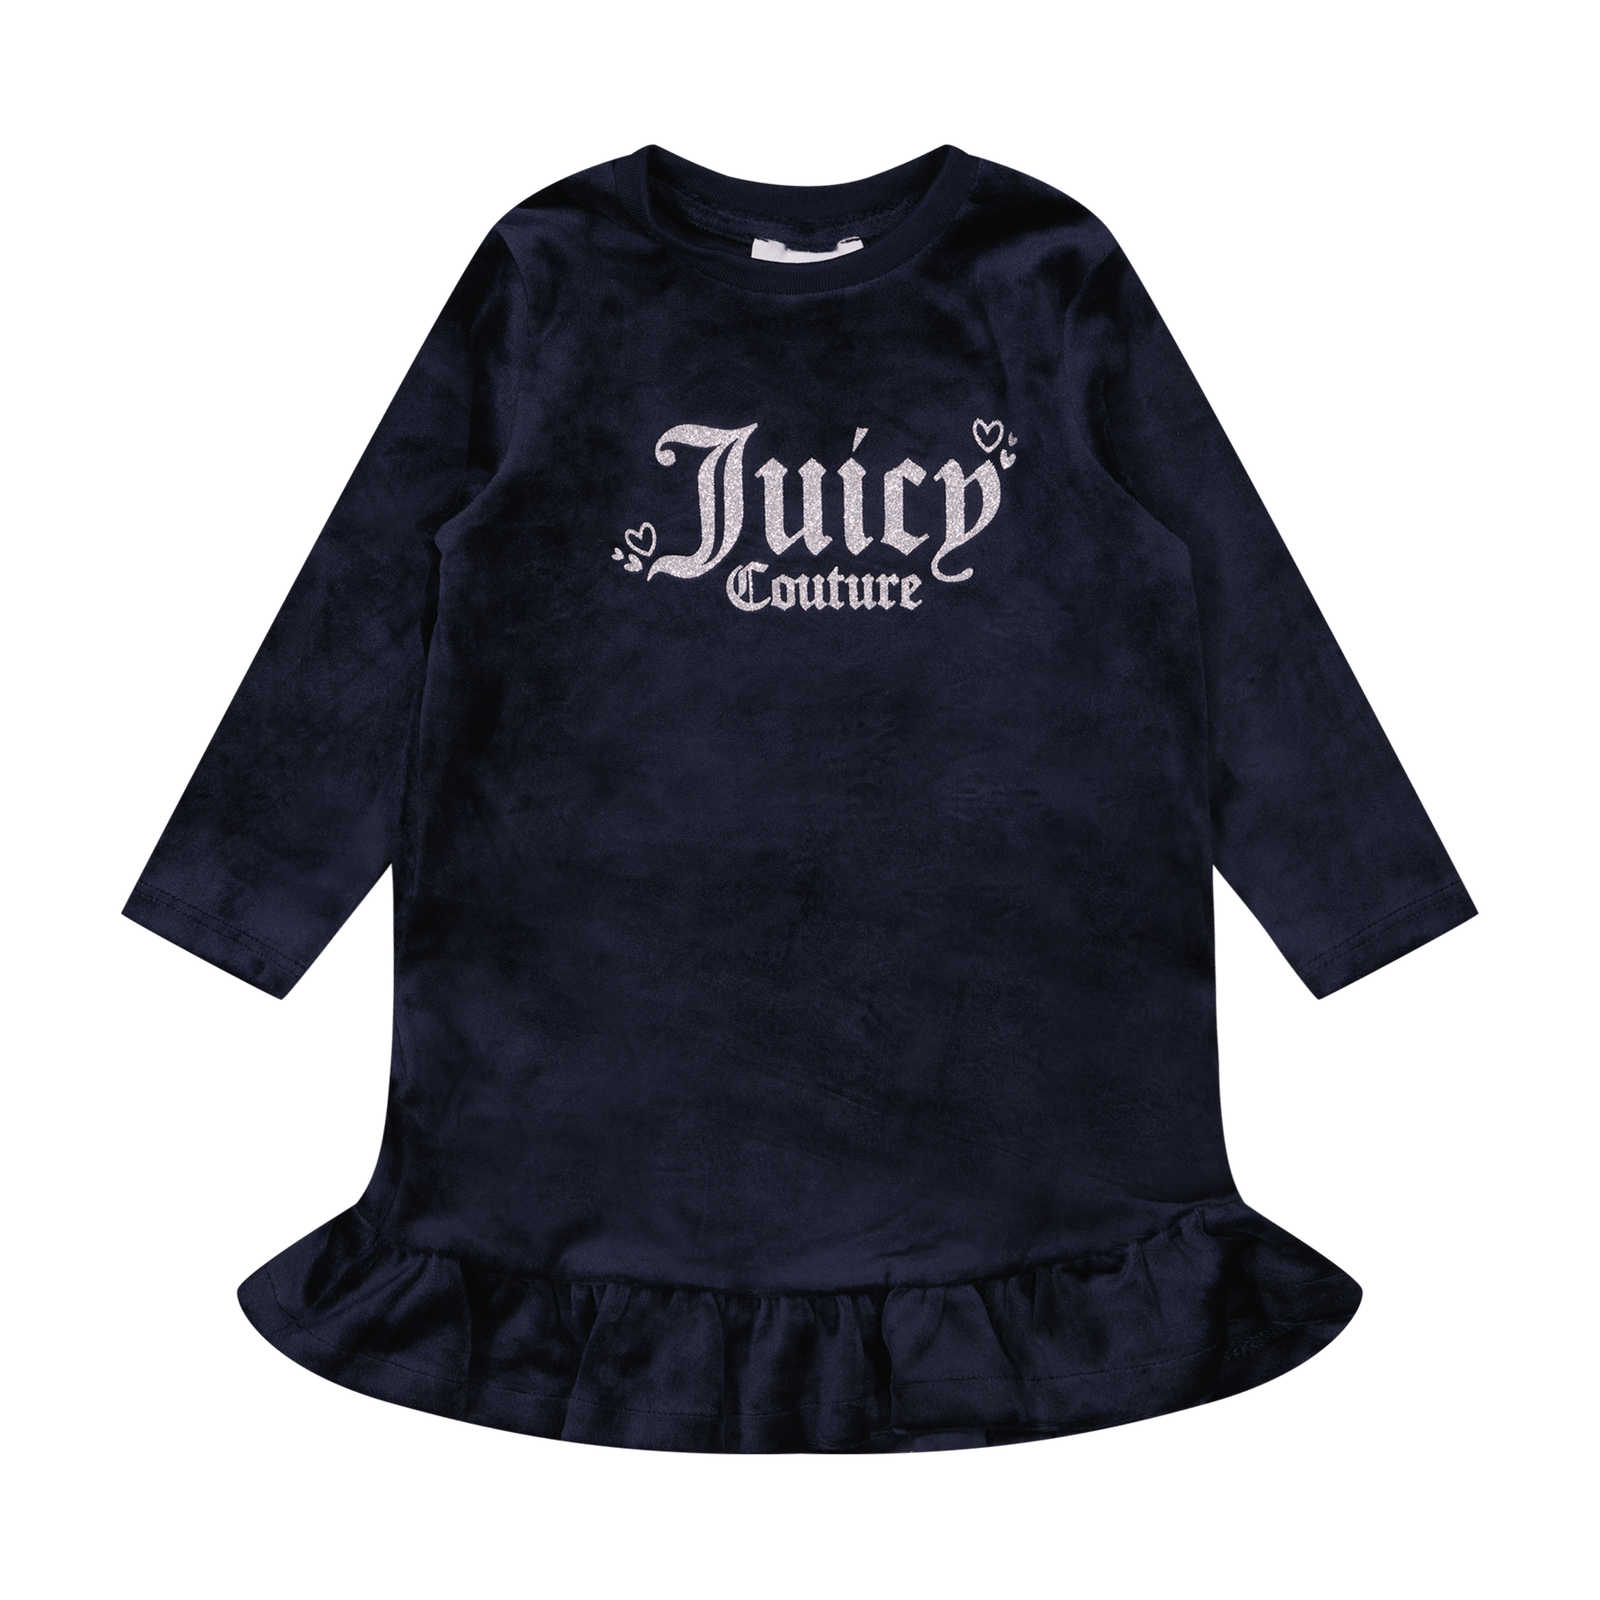 Juicy Couture Baby Meisjes Jurkje Navy 6 mnd